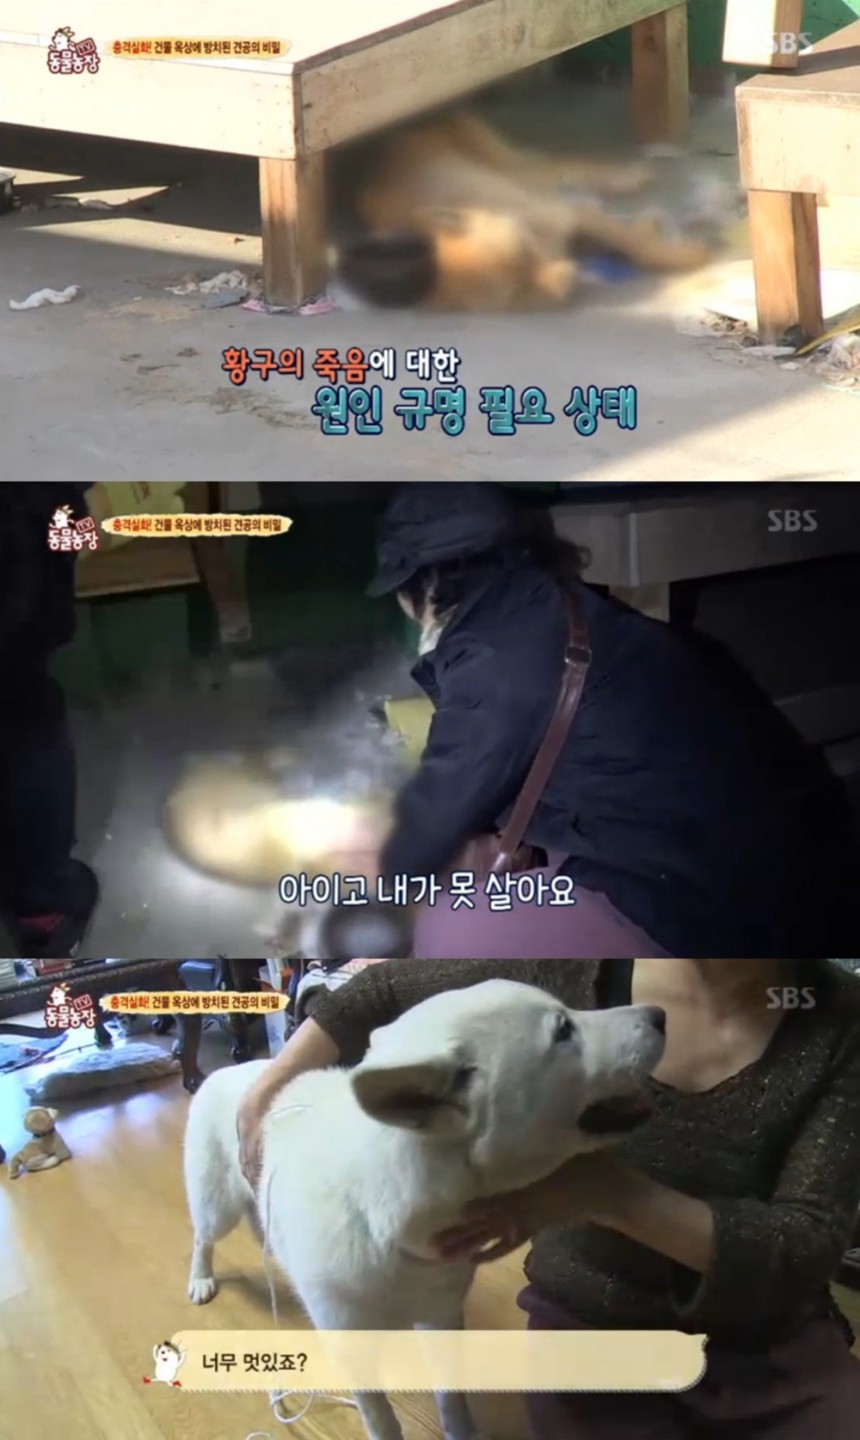 SBS ‘동물농장’ 방송캡쳐